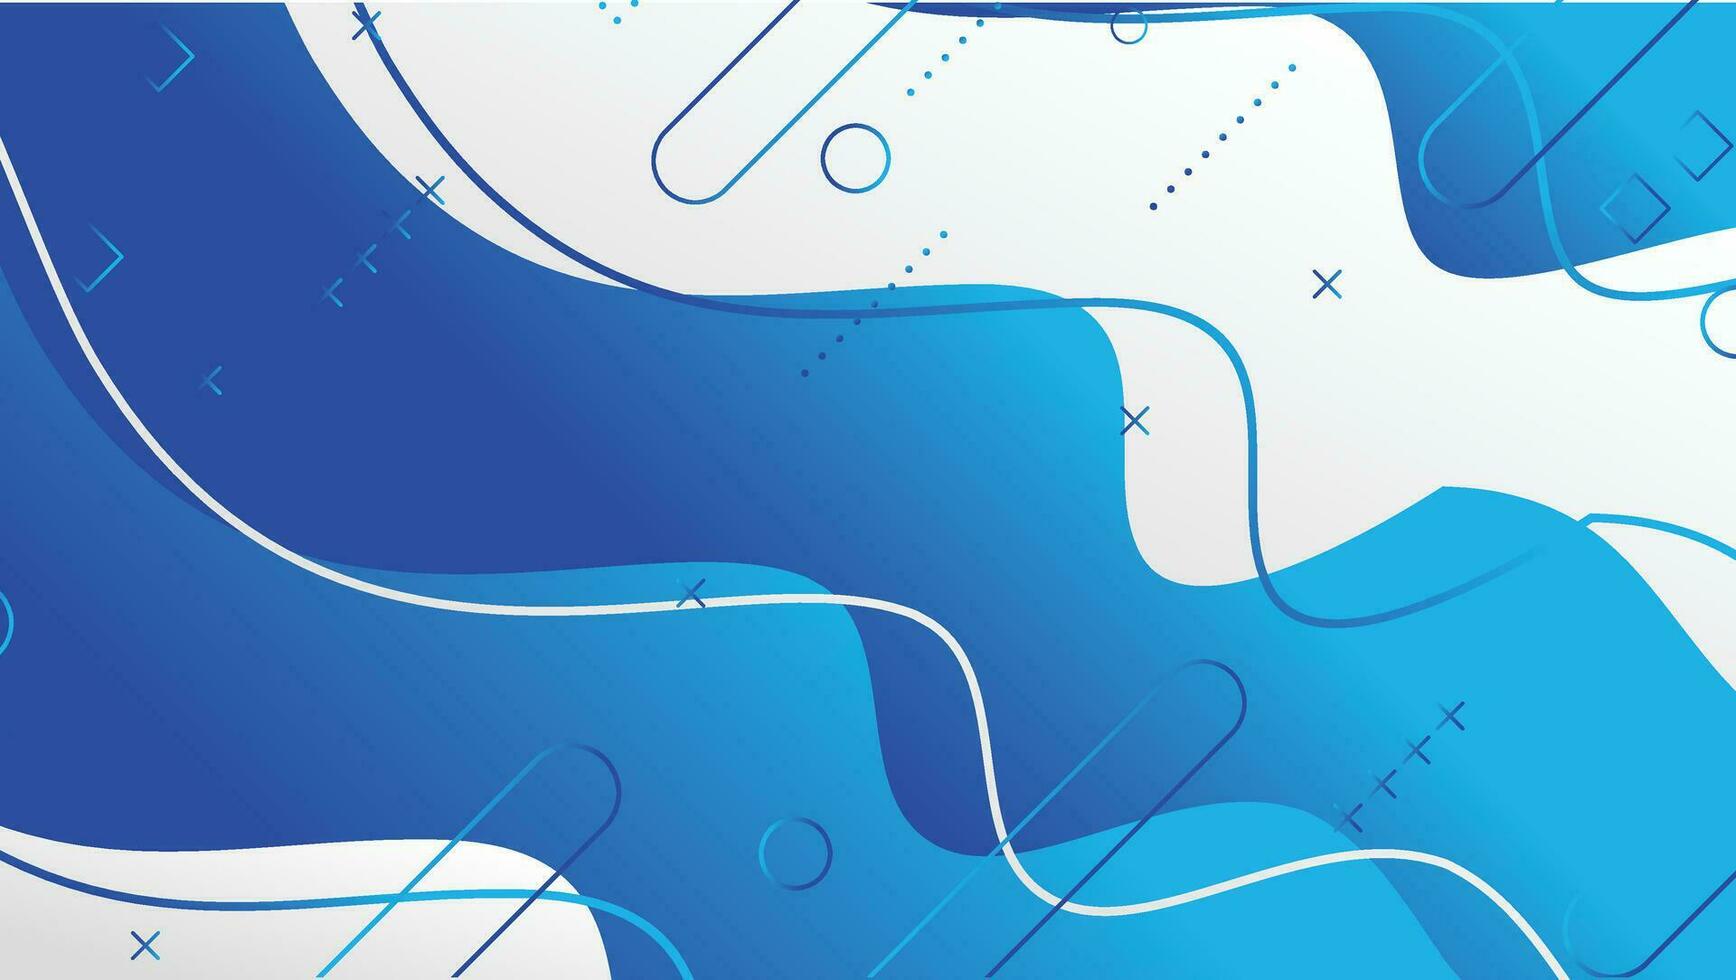 abstract blauw Golf helling meetkundig vormen achtergrond ontwerp vector